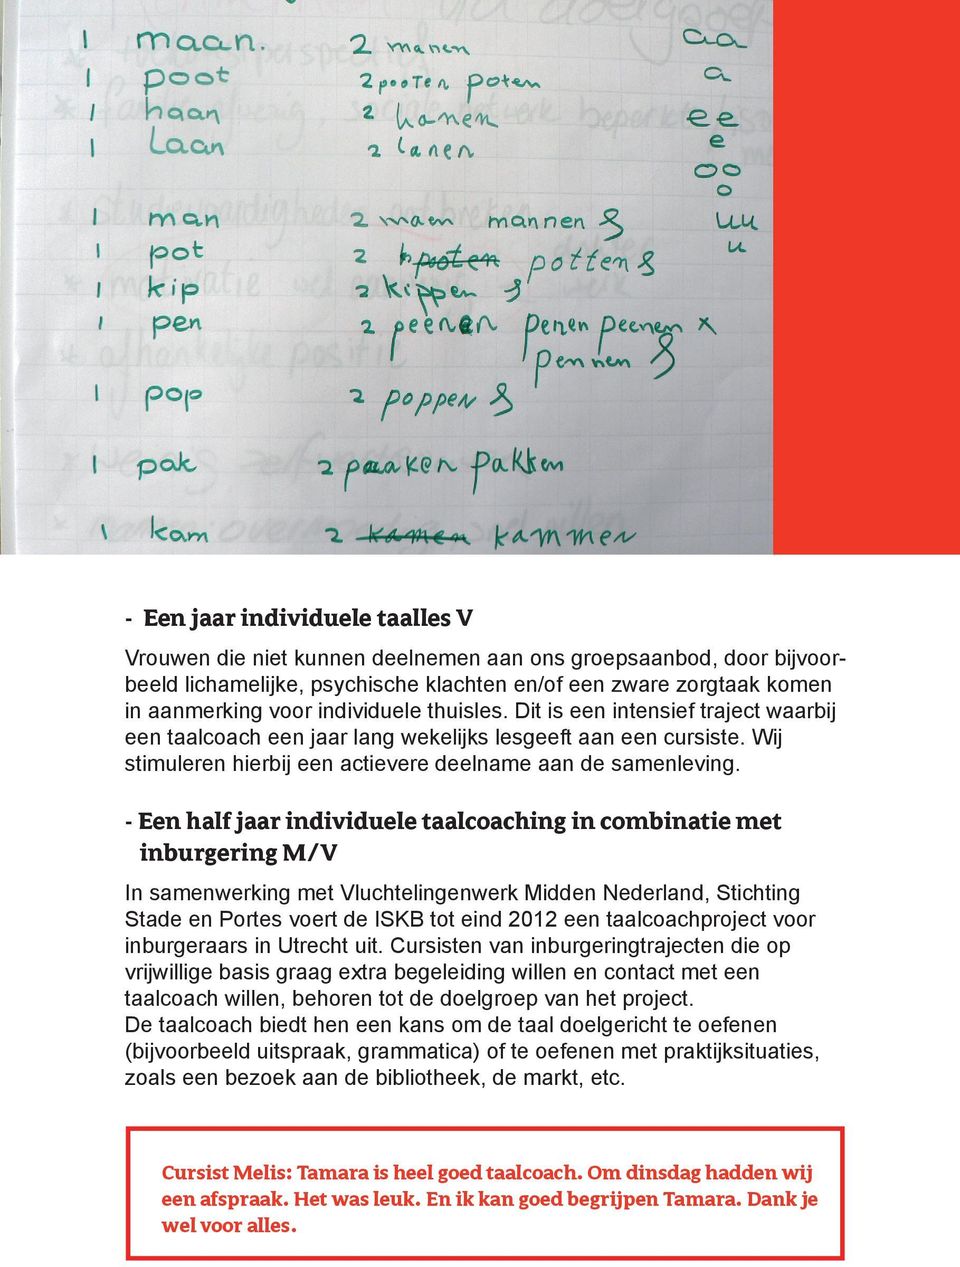 - Een half jaar individuele taalcoaching in combinatie met inburgering M/V In samenwerking met Vluchtelingenwerk Midden Nederland, Stichting Stade en Portes voert de ISKB tot eind 2012 een